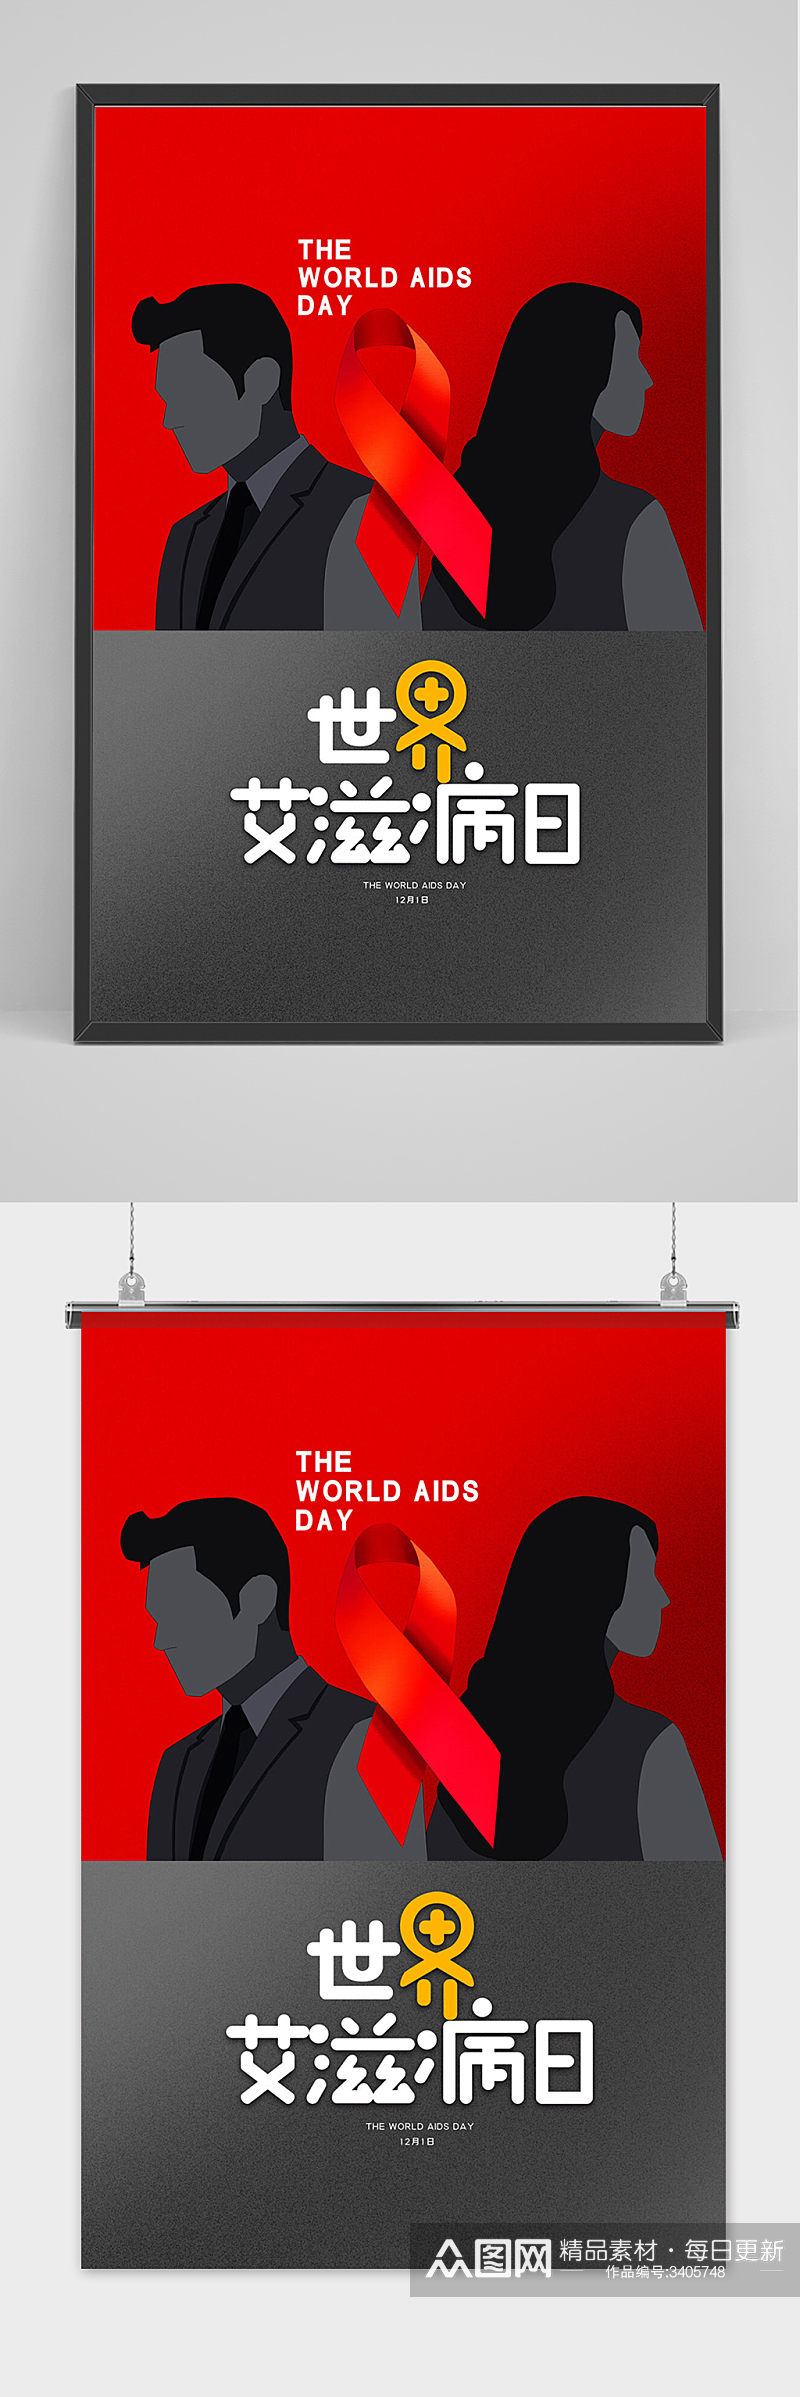 简约创意世界艾滋病日海报设计素材